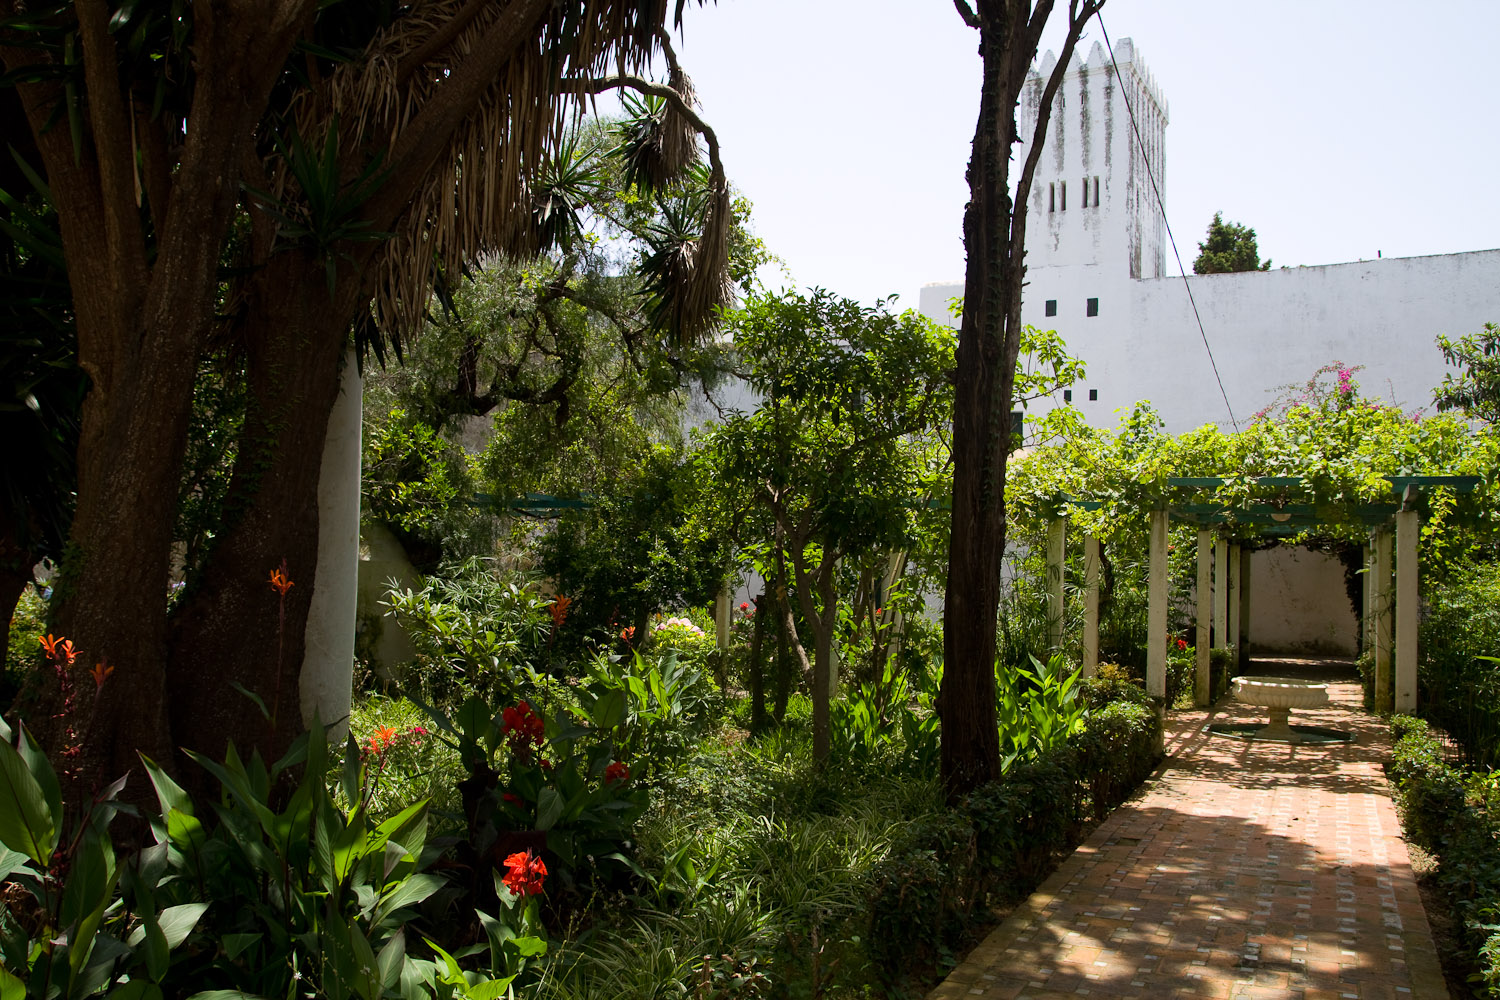 Paseando por el jardín del Museo de la Kasbah - Tánger, Marruecos